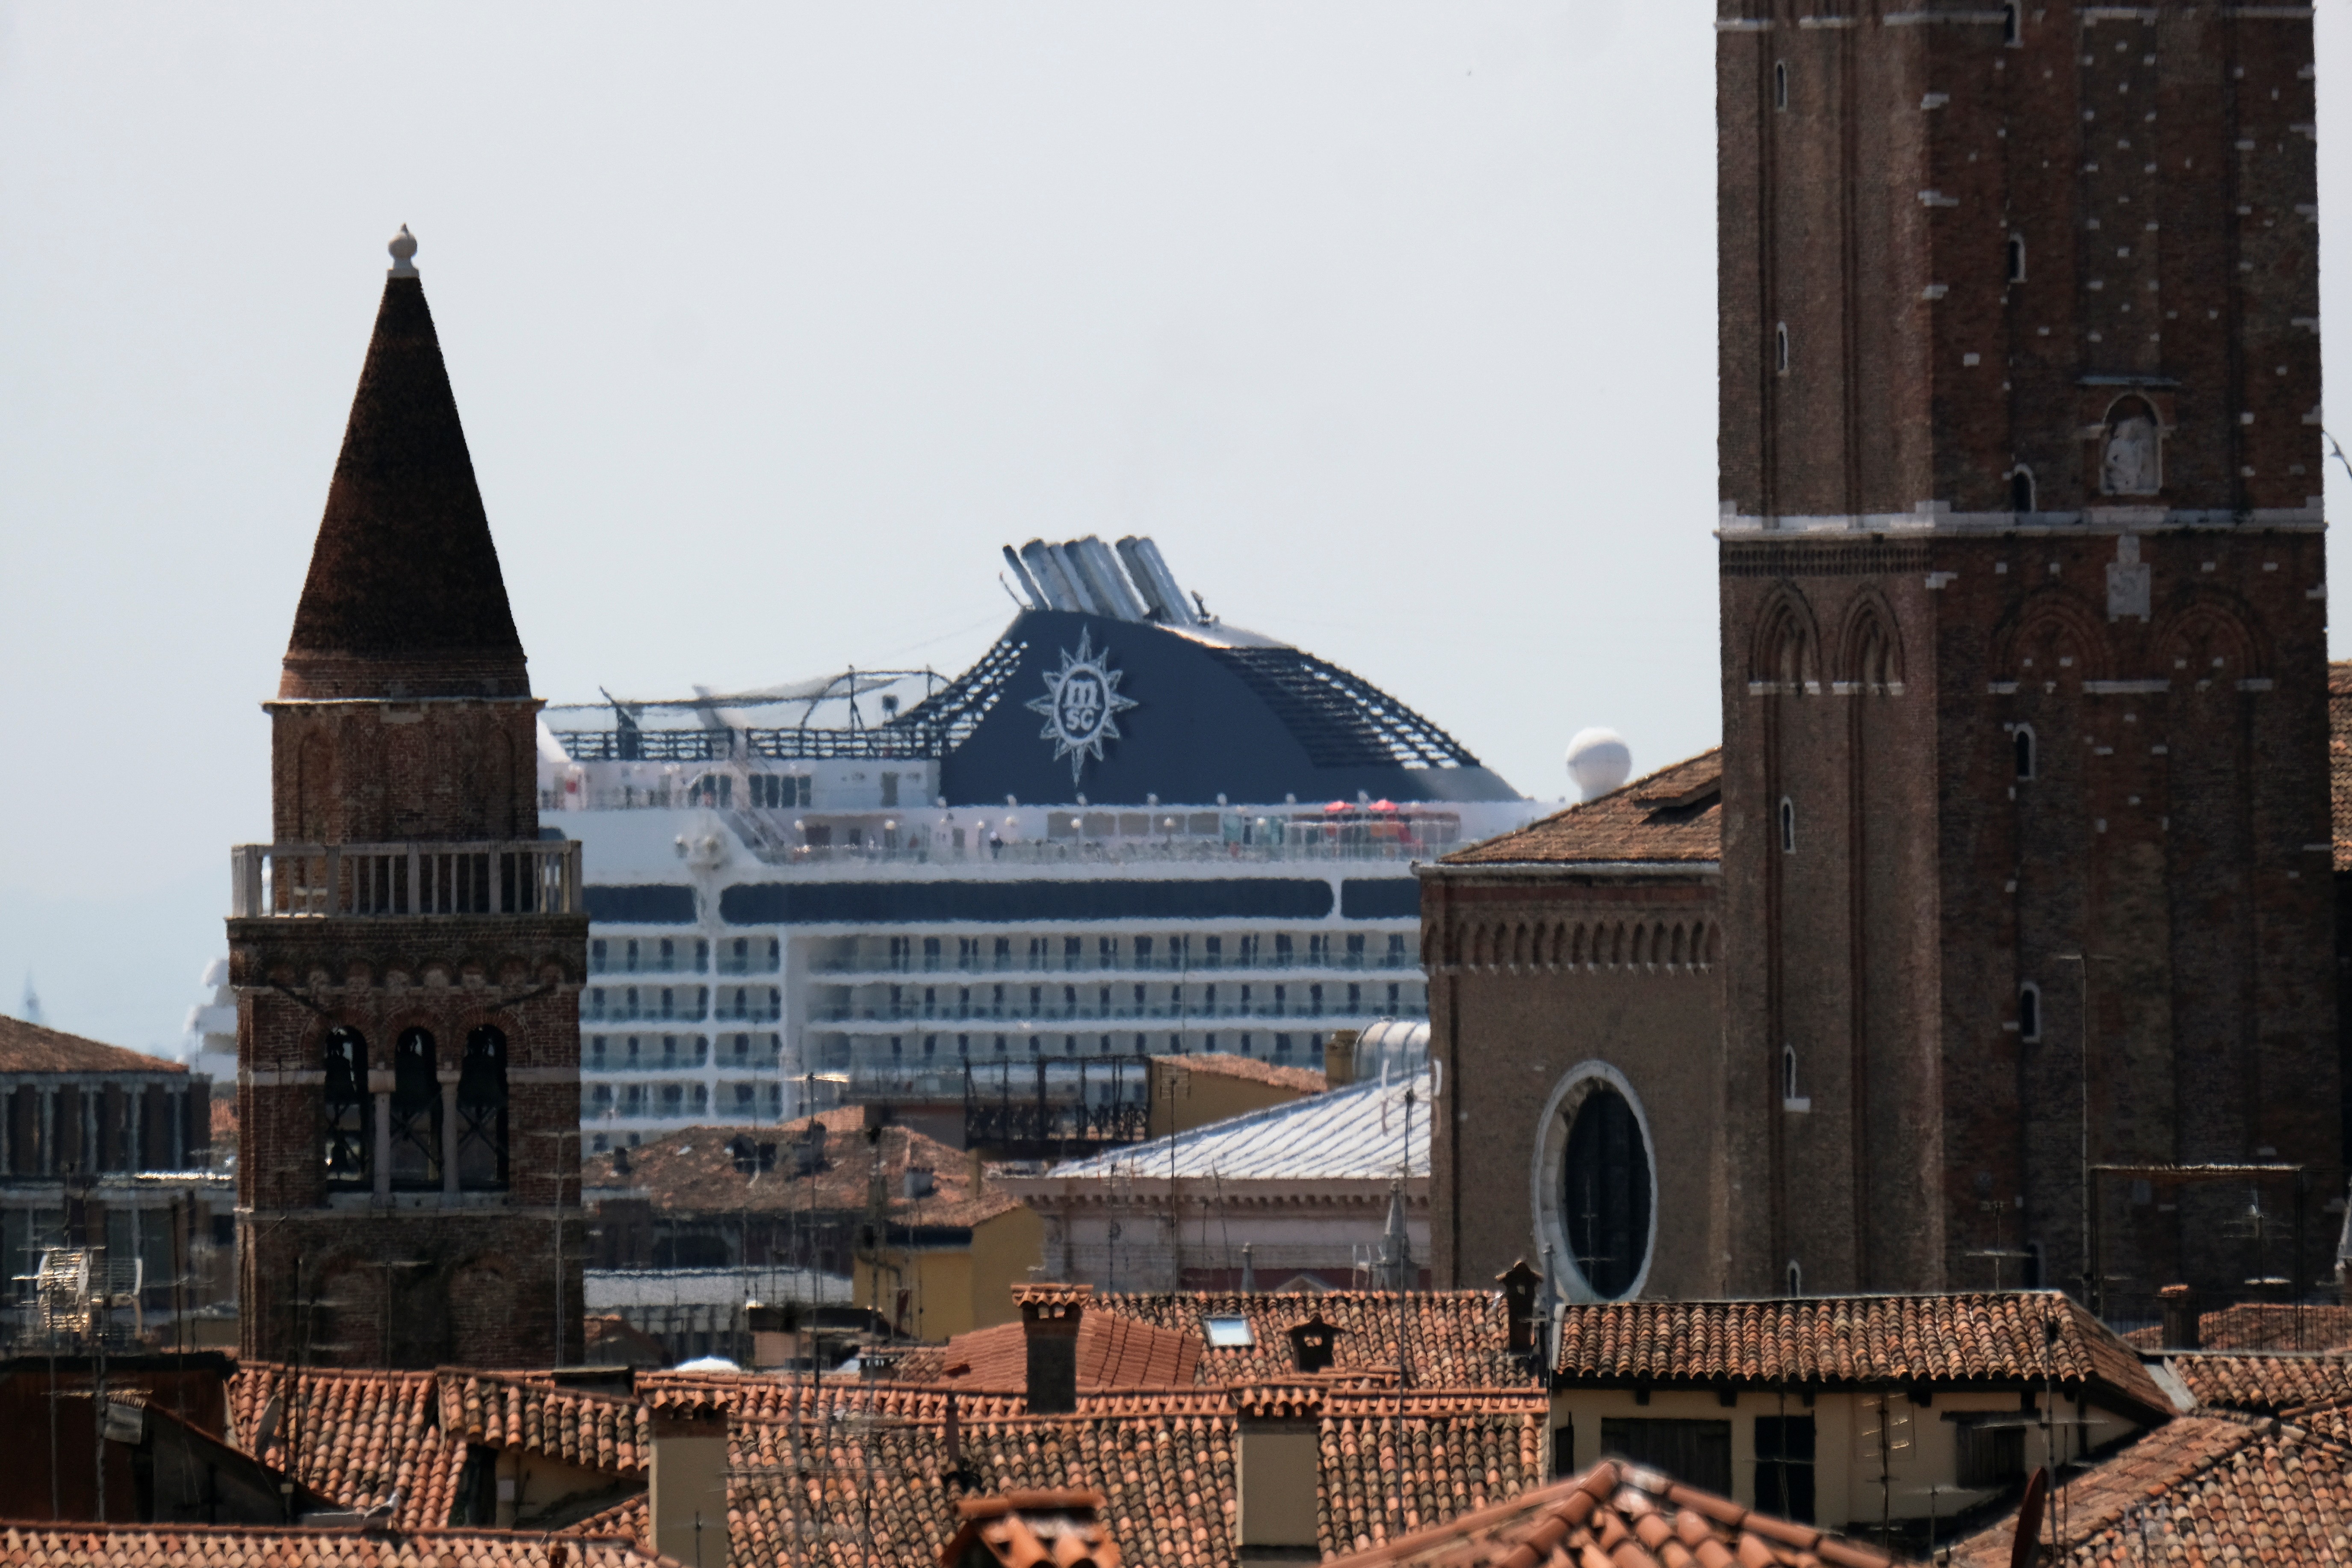 Veneza pode parar na lista de patrimônios mundiais ameaçados se não abandonar cruzeiros, diz Unesco thumbnail